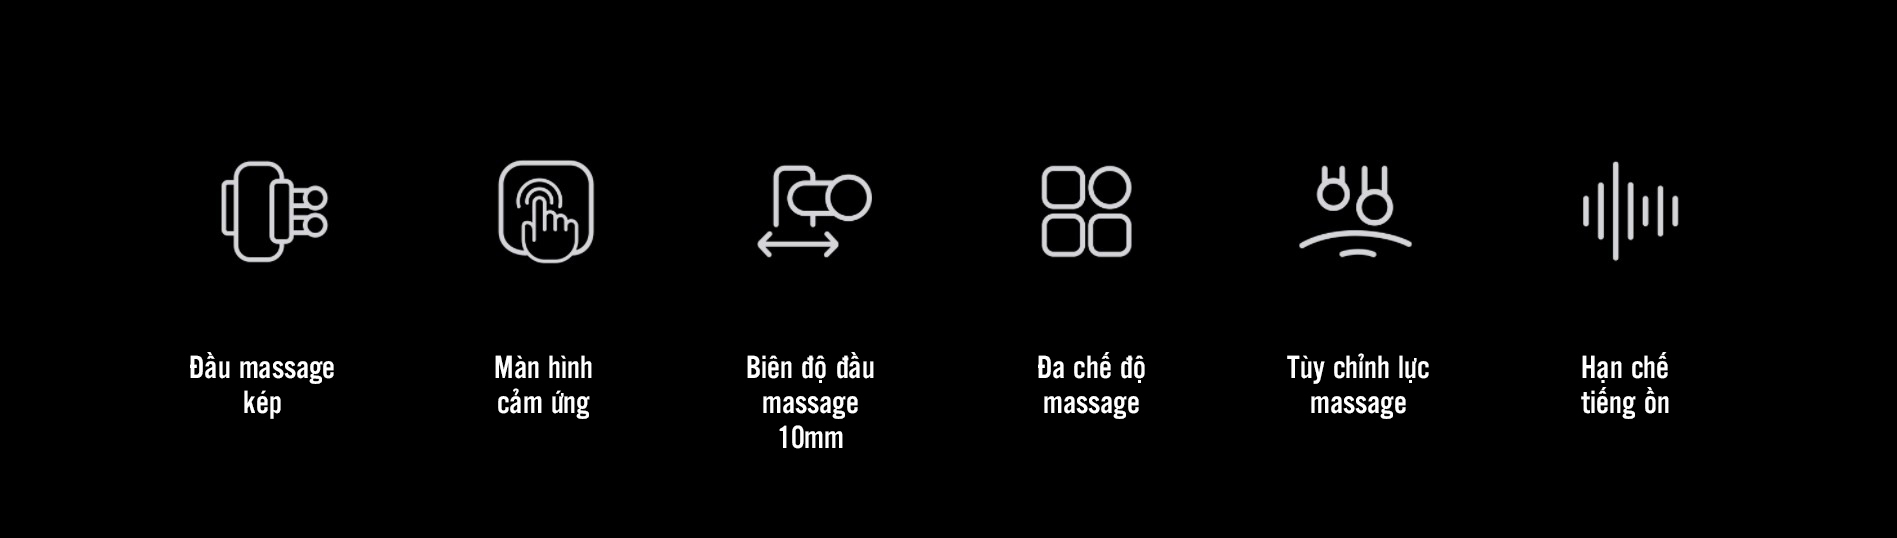 may massage kica 3.13 Máy massage cơ đa năng KiCA 3 - Grey - YCB.vn